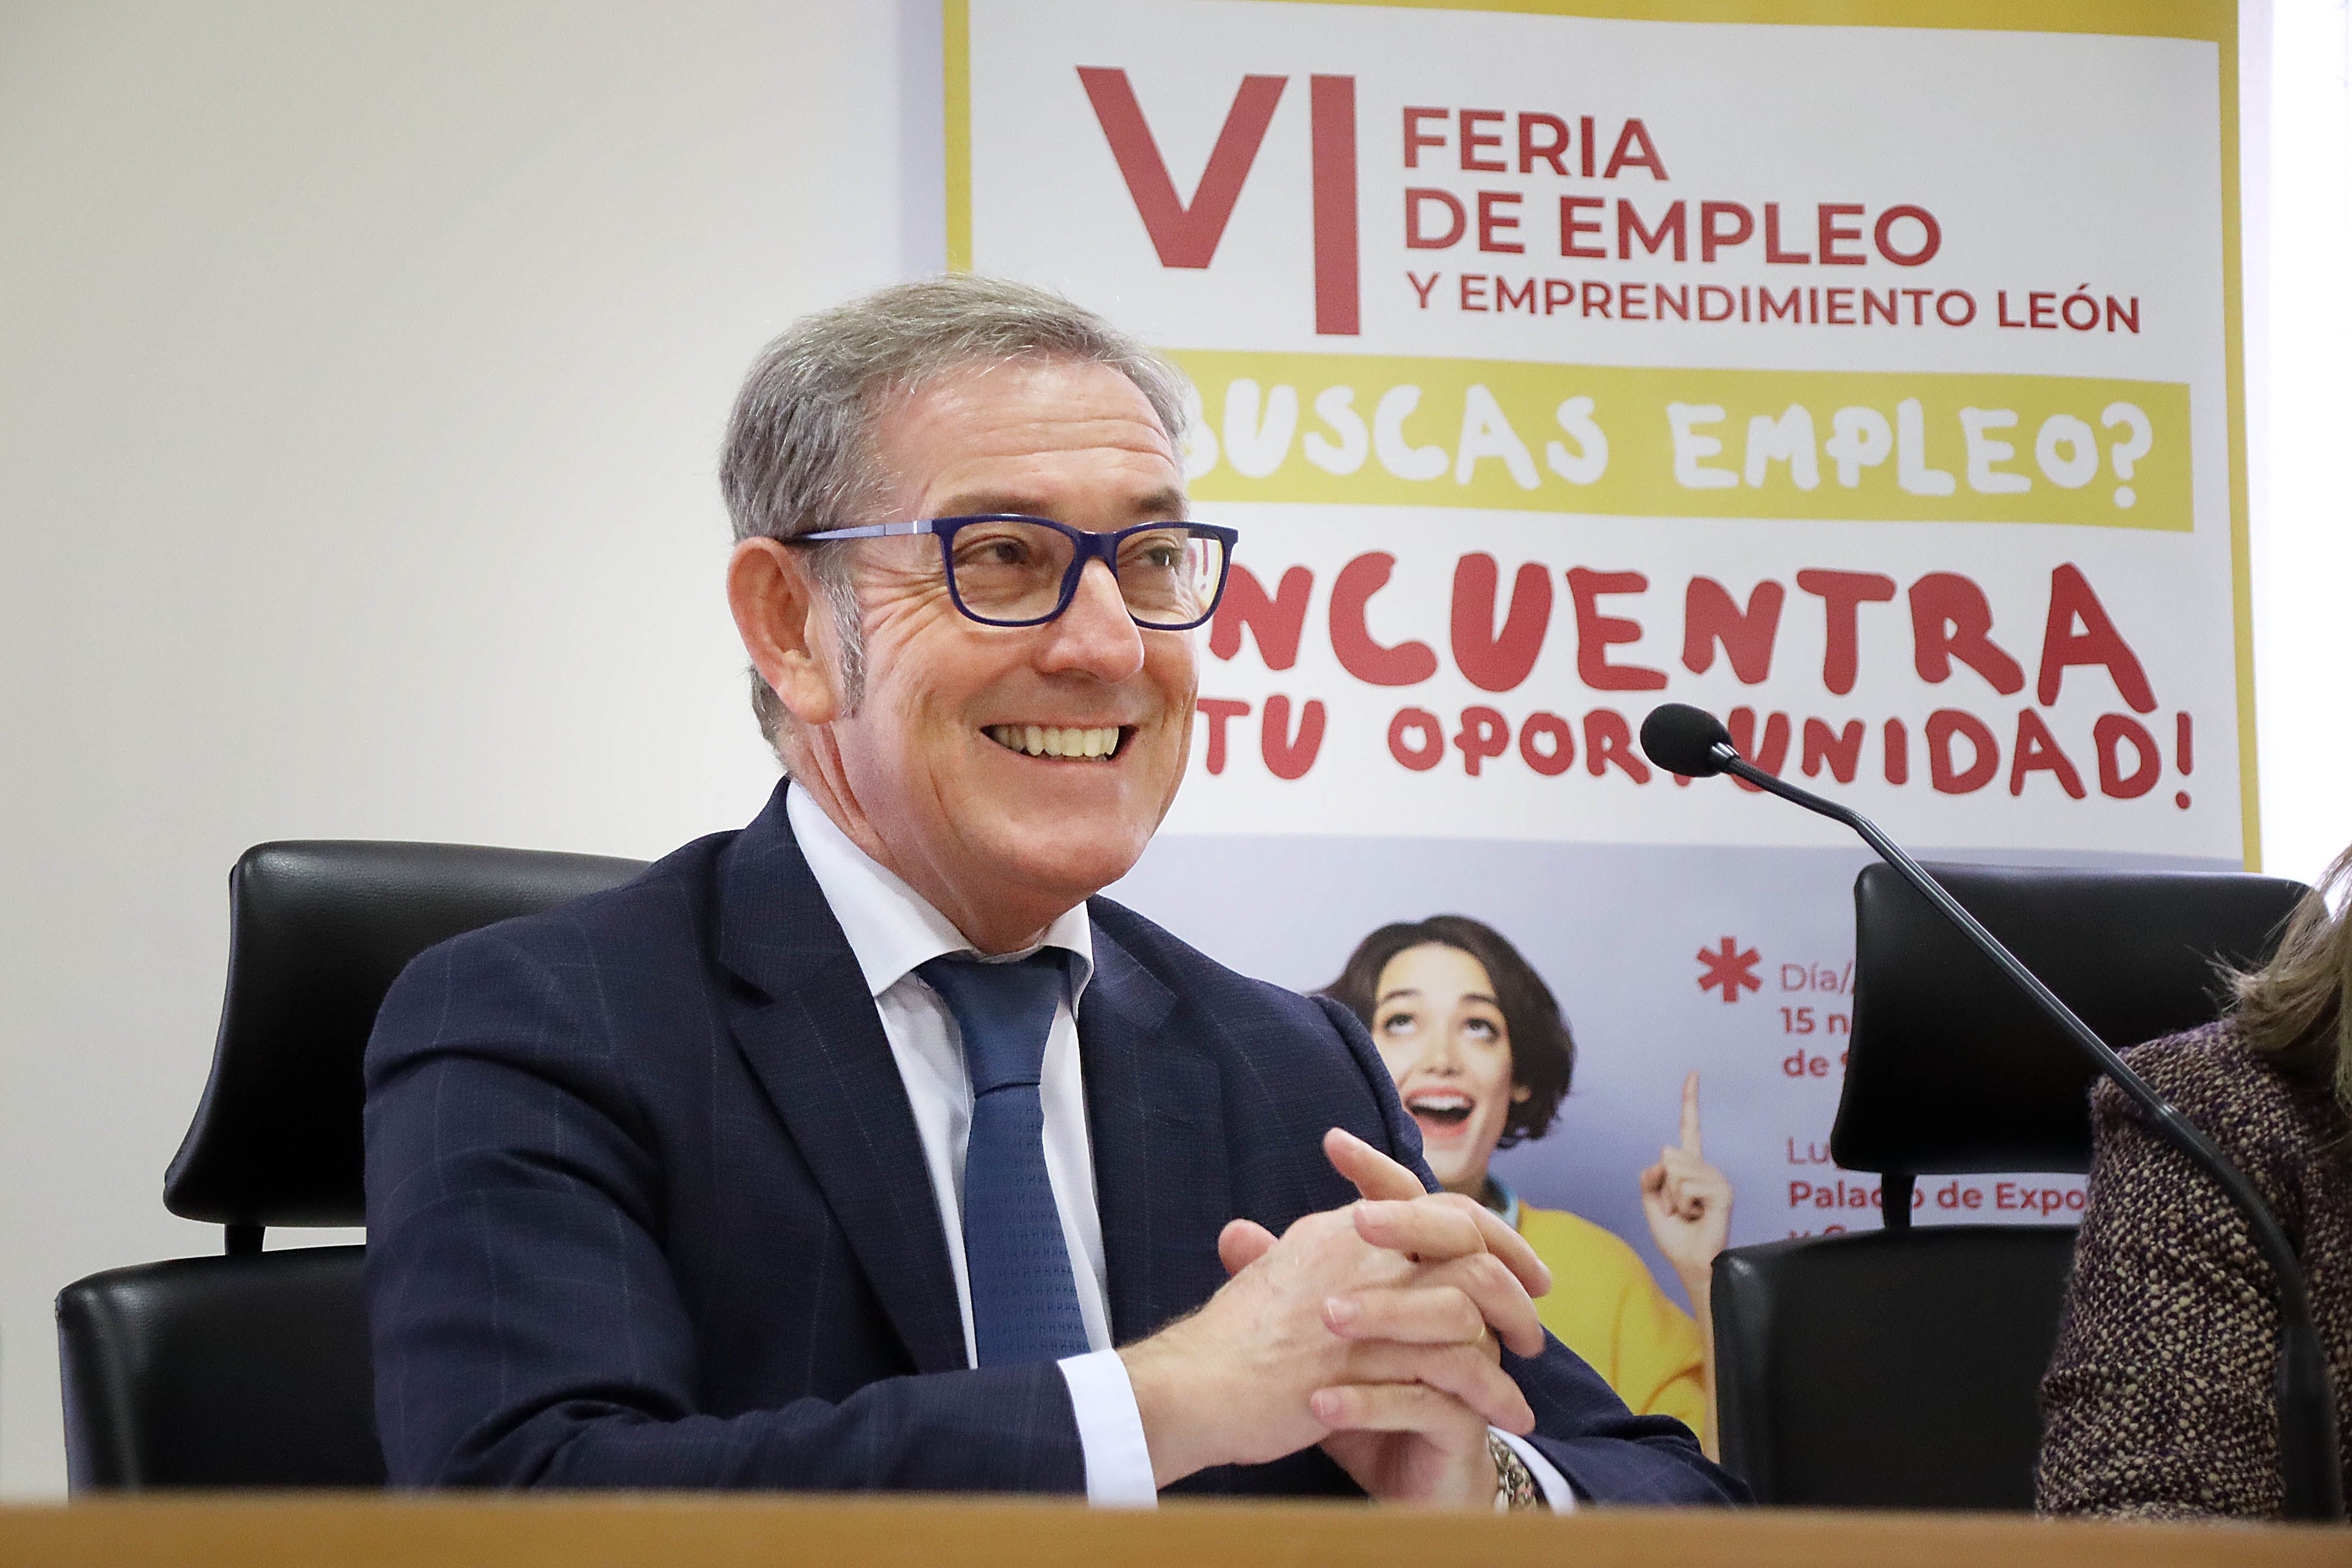 Javier Vega, presidente de la Camara de Comercio de León, presenta la IV Feria de Empleo y Emprendimiento de León